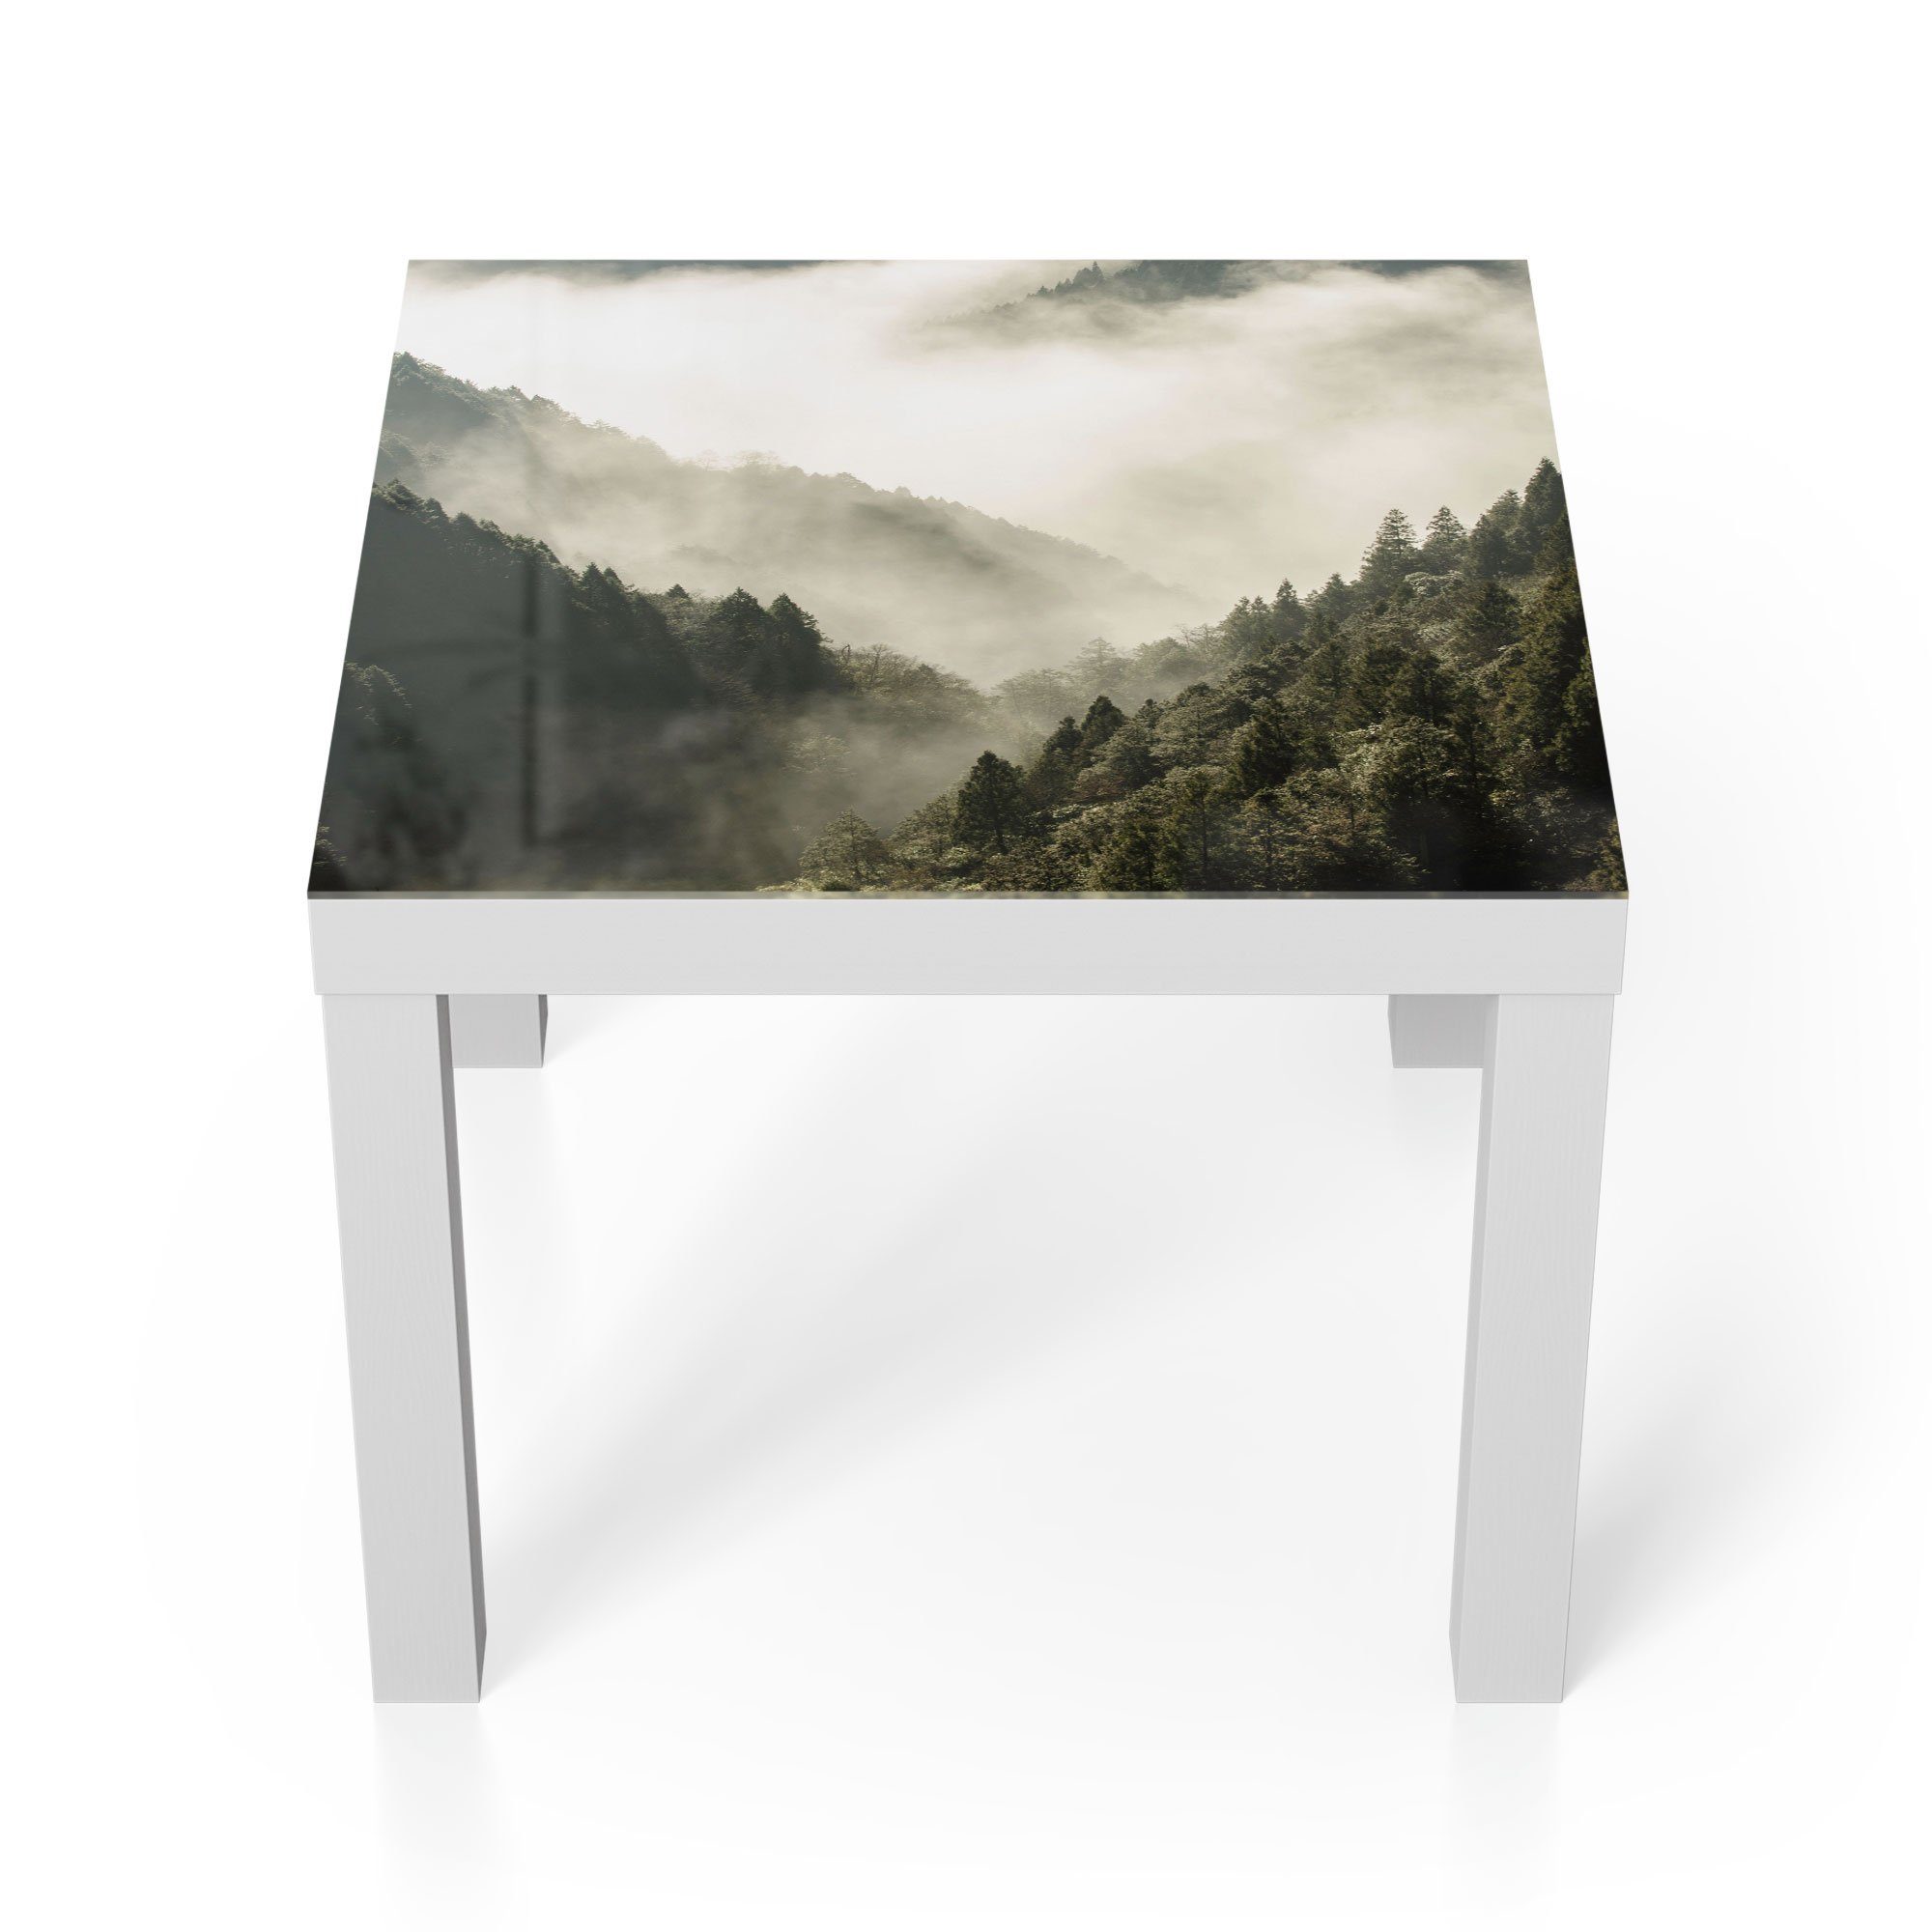 DEQORI Couchtisch 'Nebel in den Bergen', Glas Beistelltisch Glastisch modern Weiß